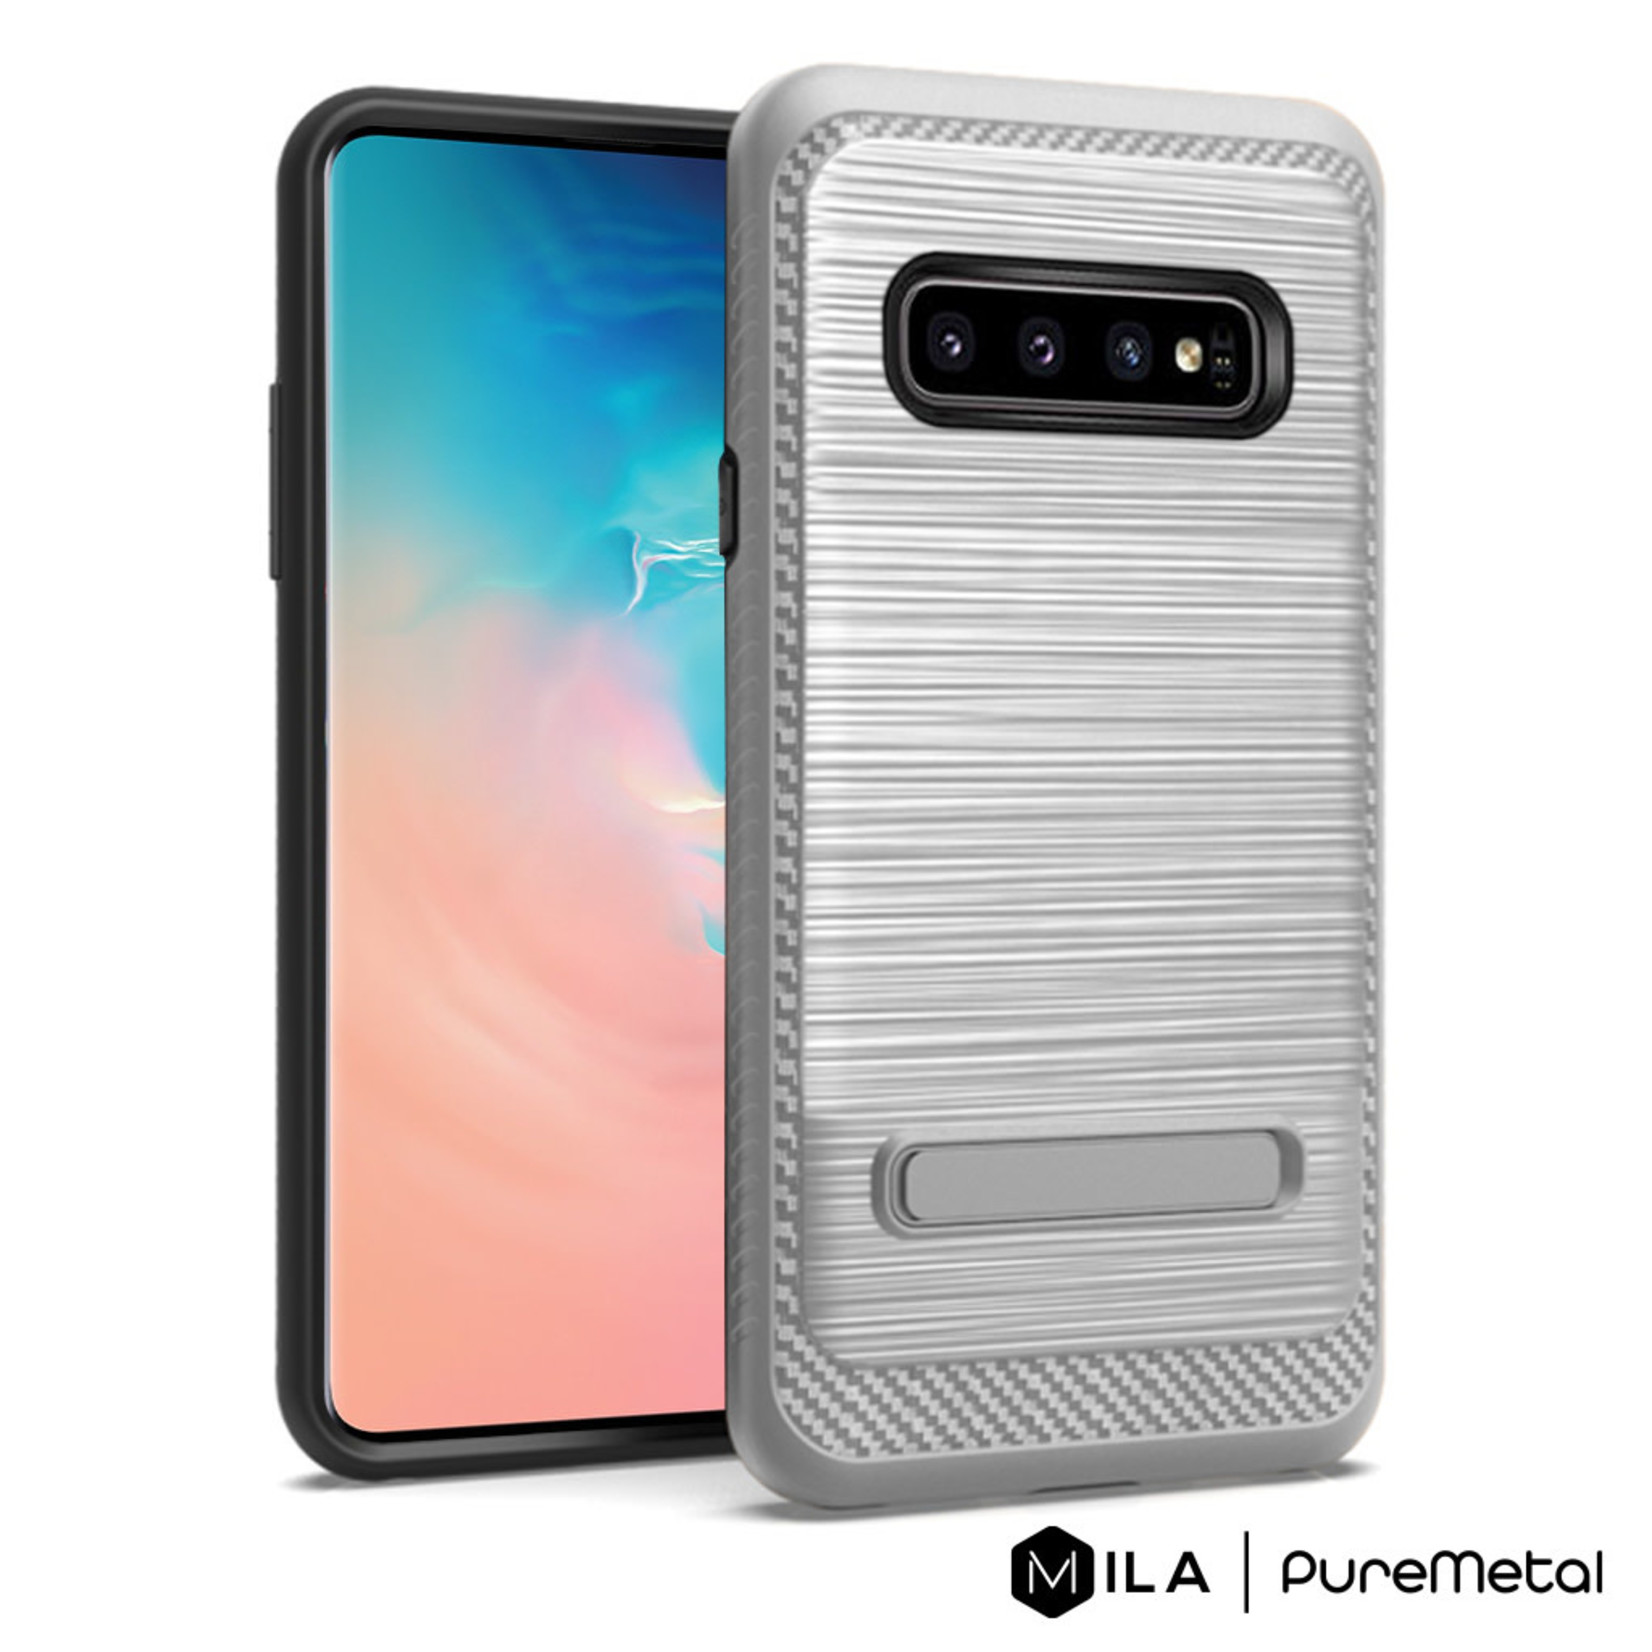 MILA | PureMetal Case for Galaxy S10e